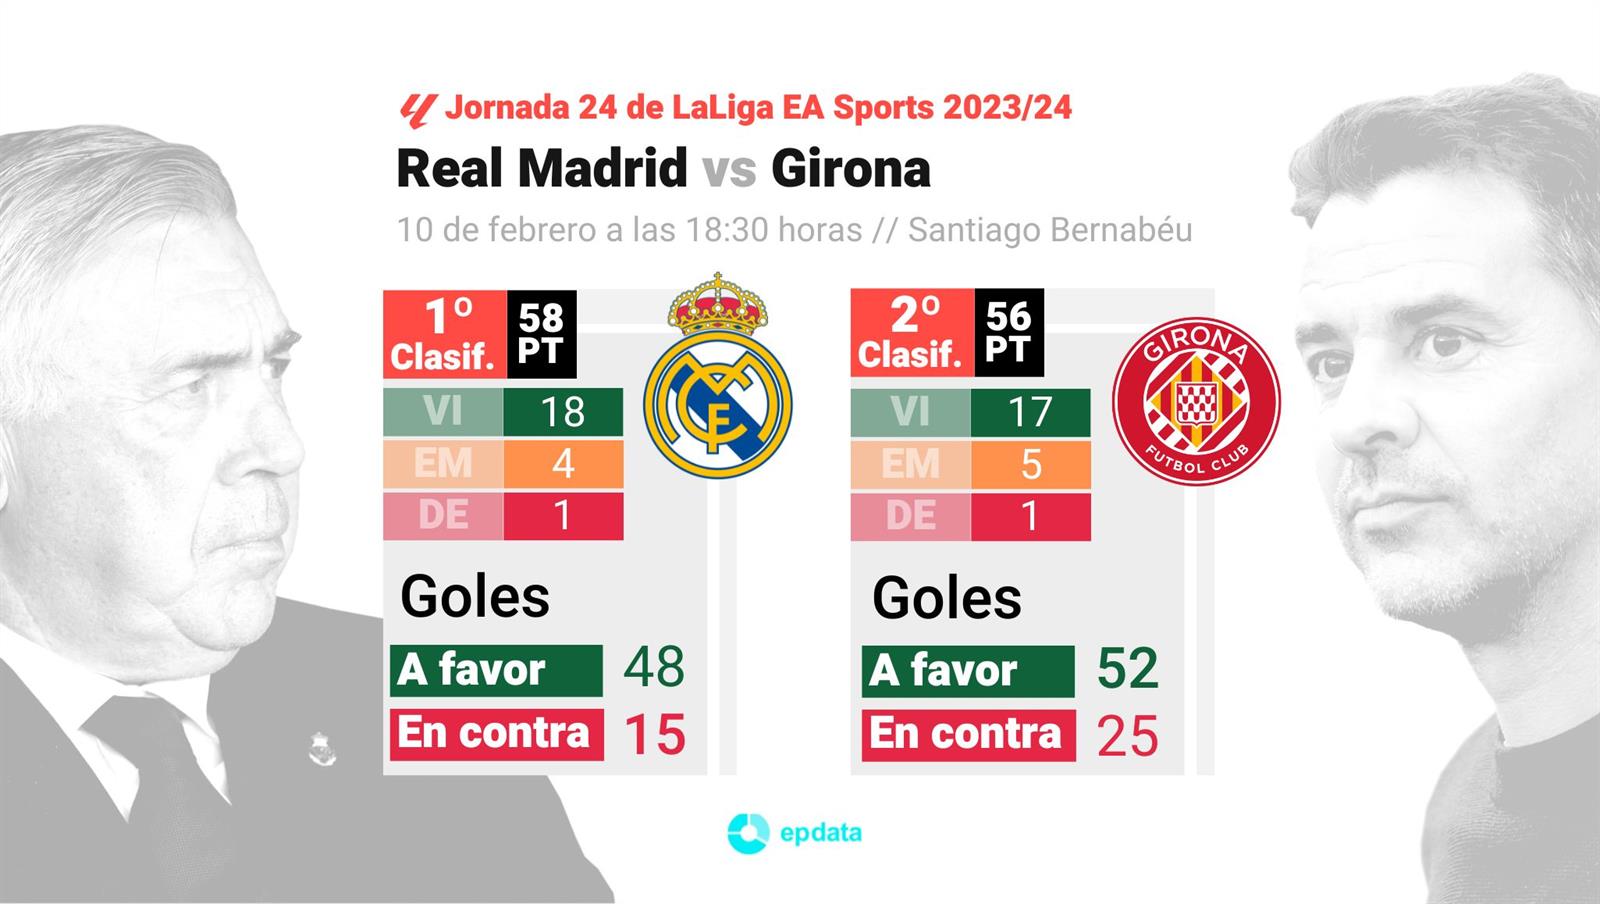 Gráfico con estadísticas del Real Madrid y el Girona en la clasificación de LaLiga EA Sports, con marcador y goles hasta su próximo enfrentamiento el 10 de febrero de 2024.